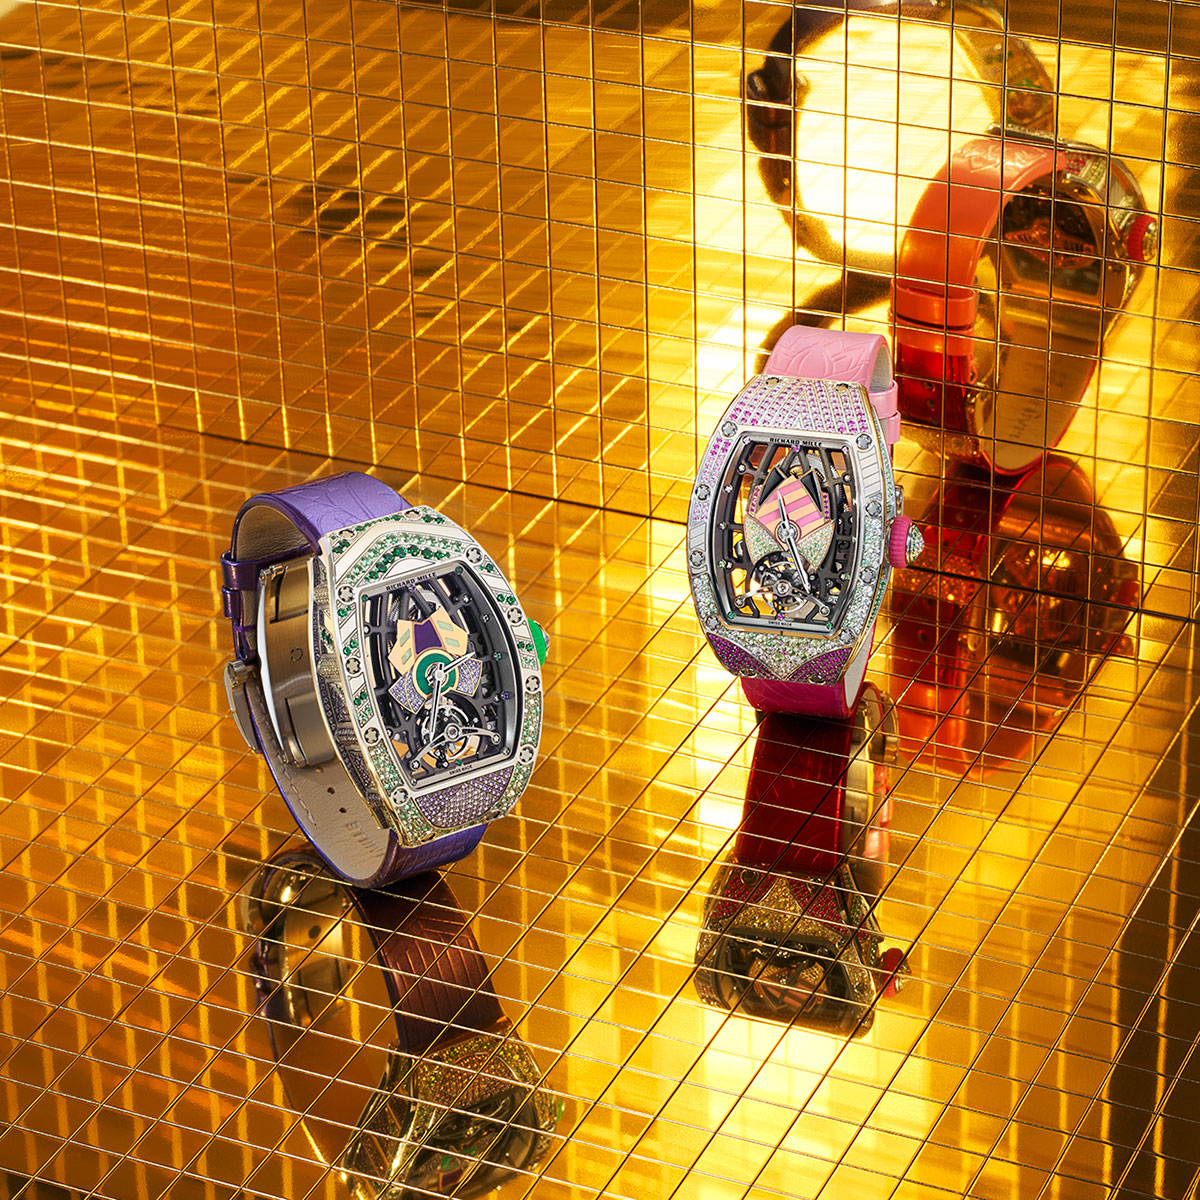 Đồng hồ RM 71-02 Automatic Tourbillon Talisman: Chiếc bùa may mắn sắc cầu vồng từ Richard Mille